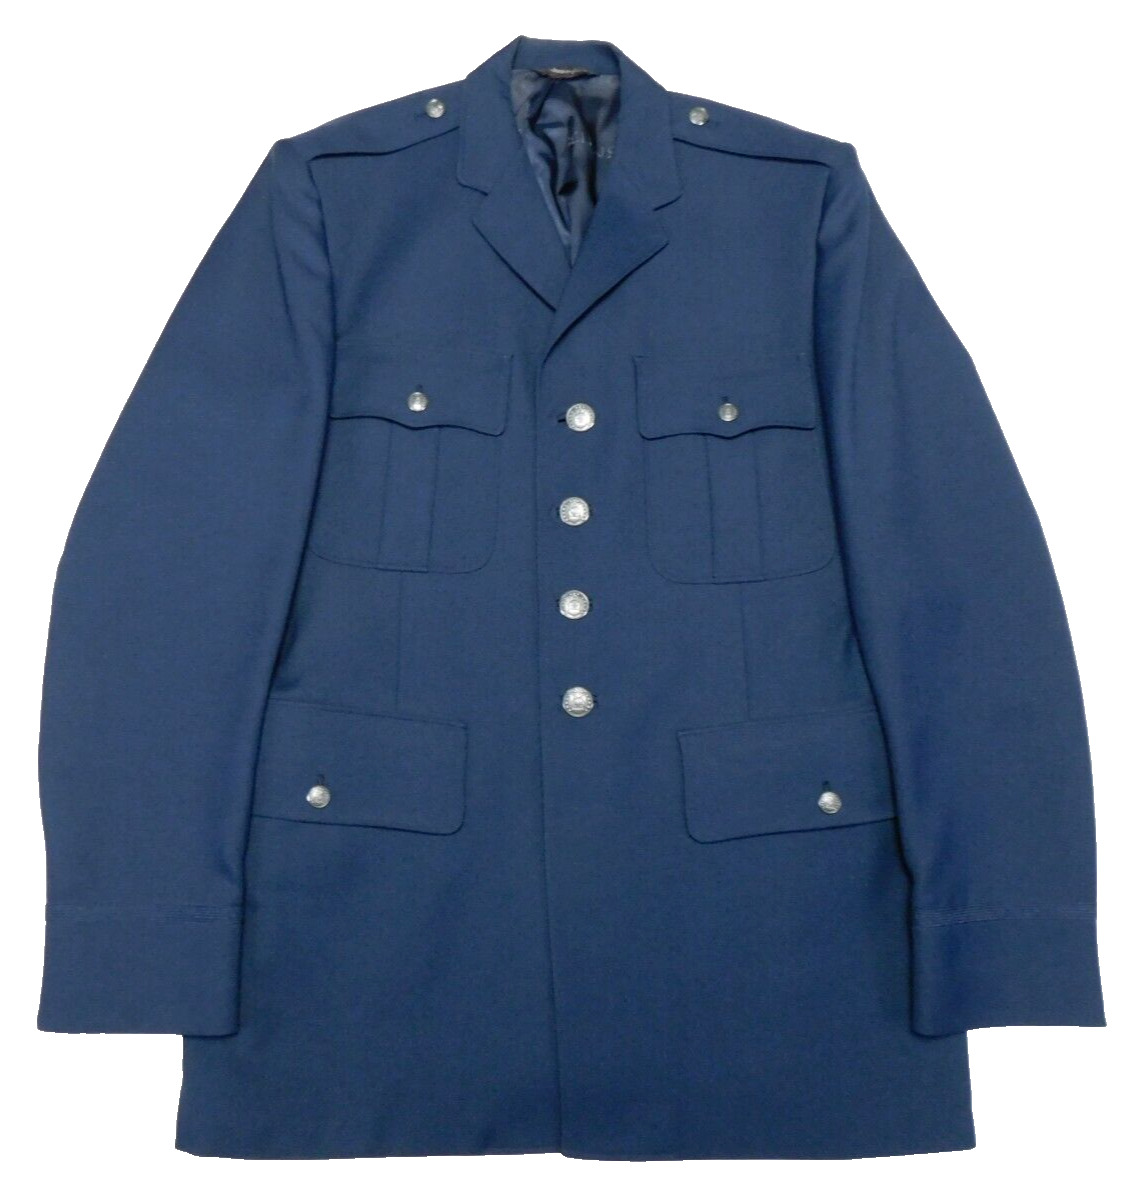 Vintage US Air Force Coat 43 Long Officer Polyester Serge Service Dress Uniform